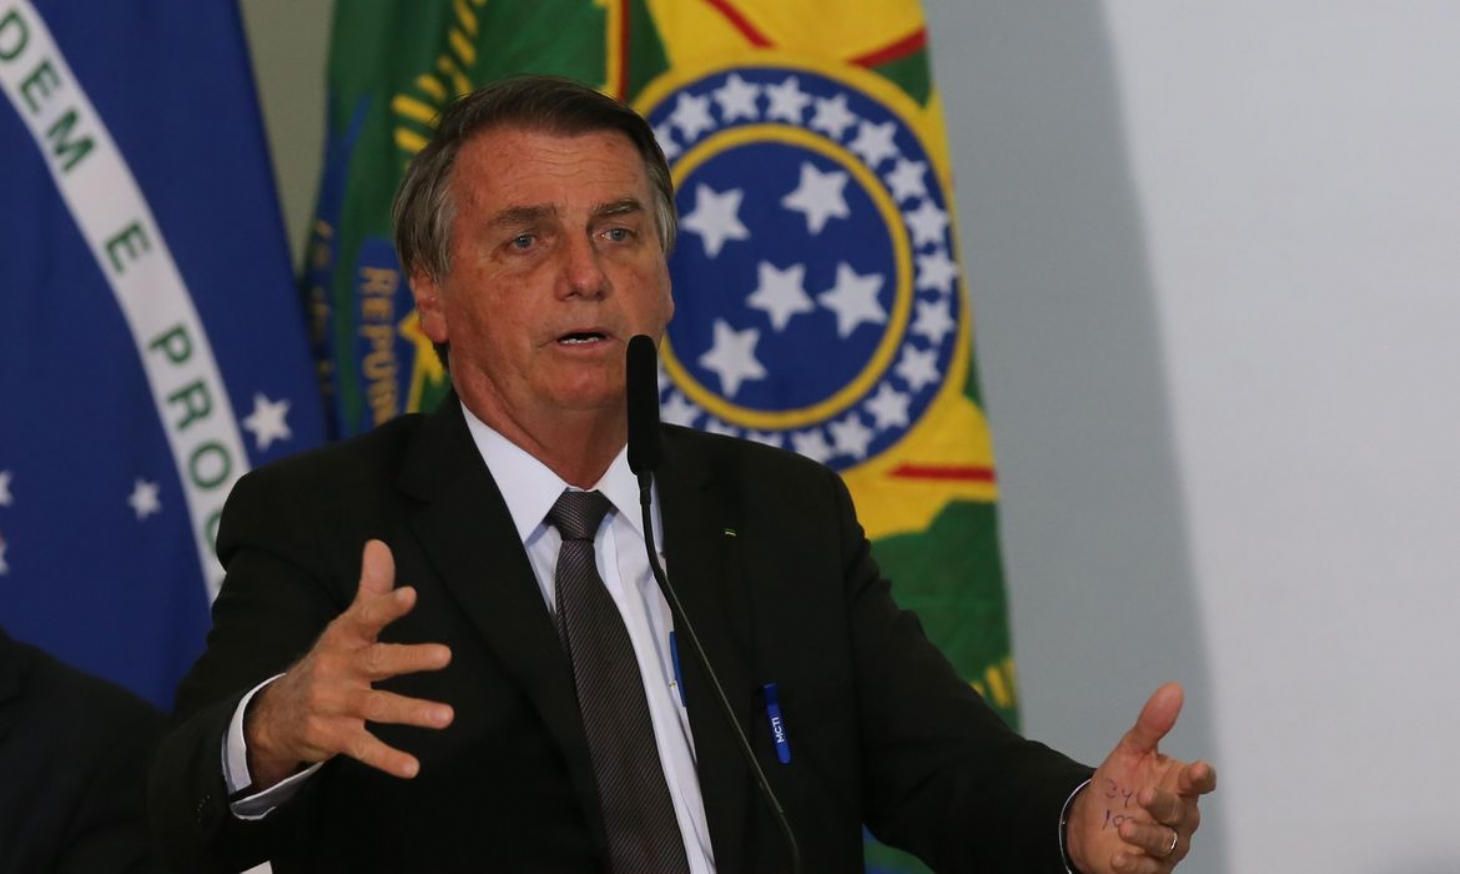 Após entrada de Bolsonaro, ala do PL exige autonomia para apoiar PT e MDB | Jornal da Orla